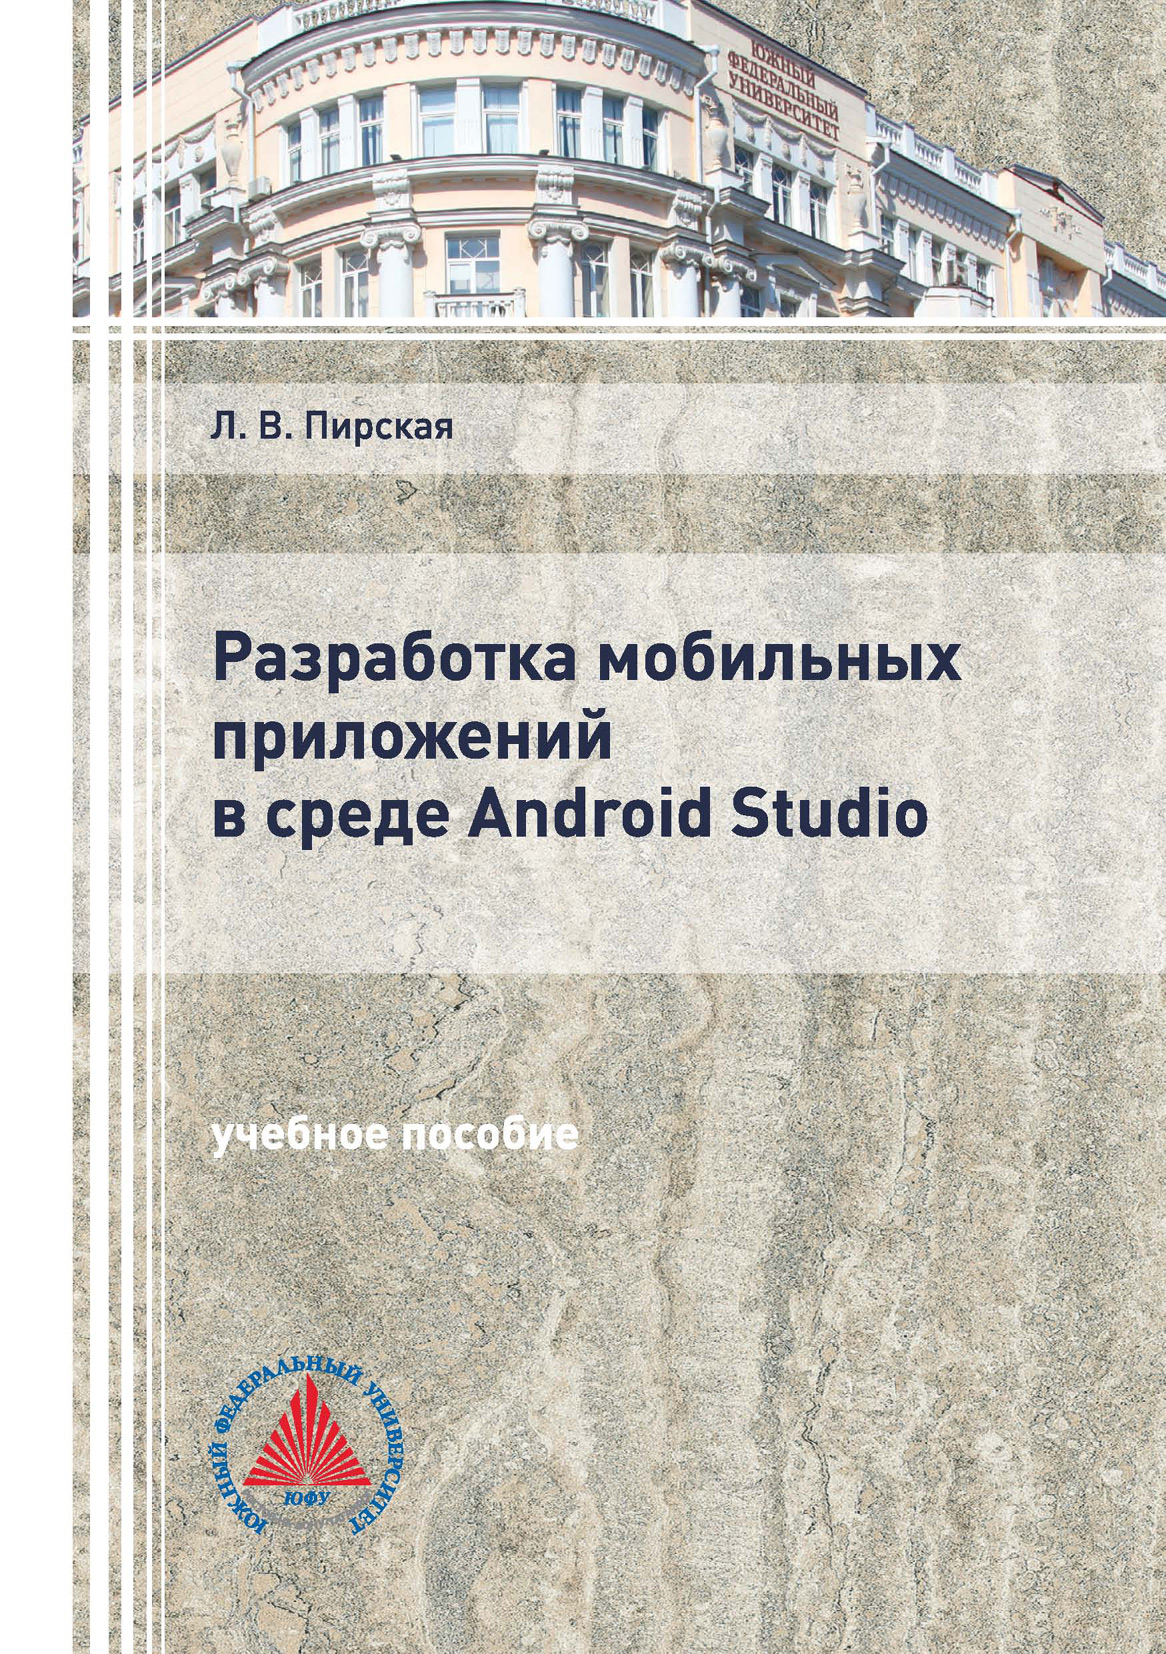 Книга  Разработка мобильных приложений в среде Android Studio созданная Л. В. Пирская может относится к жанру программирование, учебники и пособия для вузов. Стоимость электронной книги Разработка мобильных приложений в среде Android Studio с идентификатором 66419640 составляет 184.00 руб.